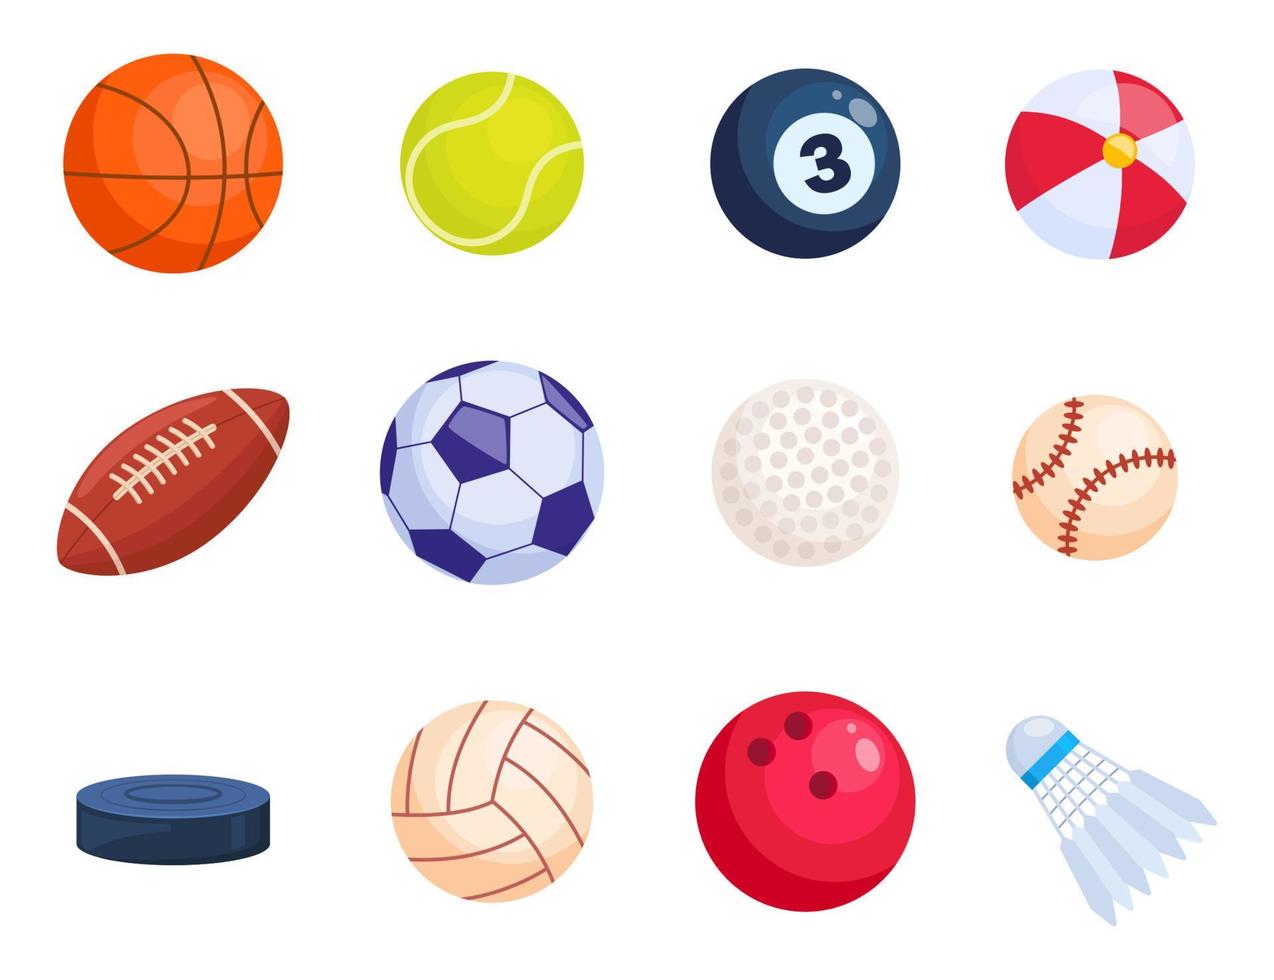 sport bollar. fotboll, basketboll, tennis, biljard, fotboll, golf, baseboll, volleyboll, hockey puck, biljard boll, fjäderboll. vektor illustration.